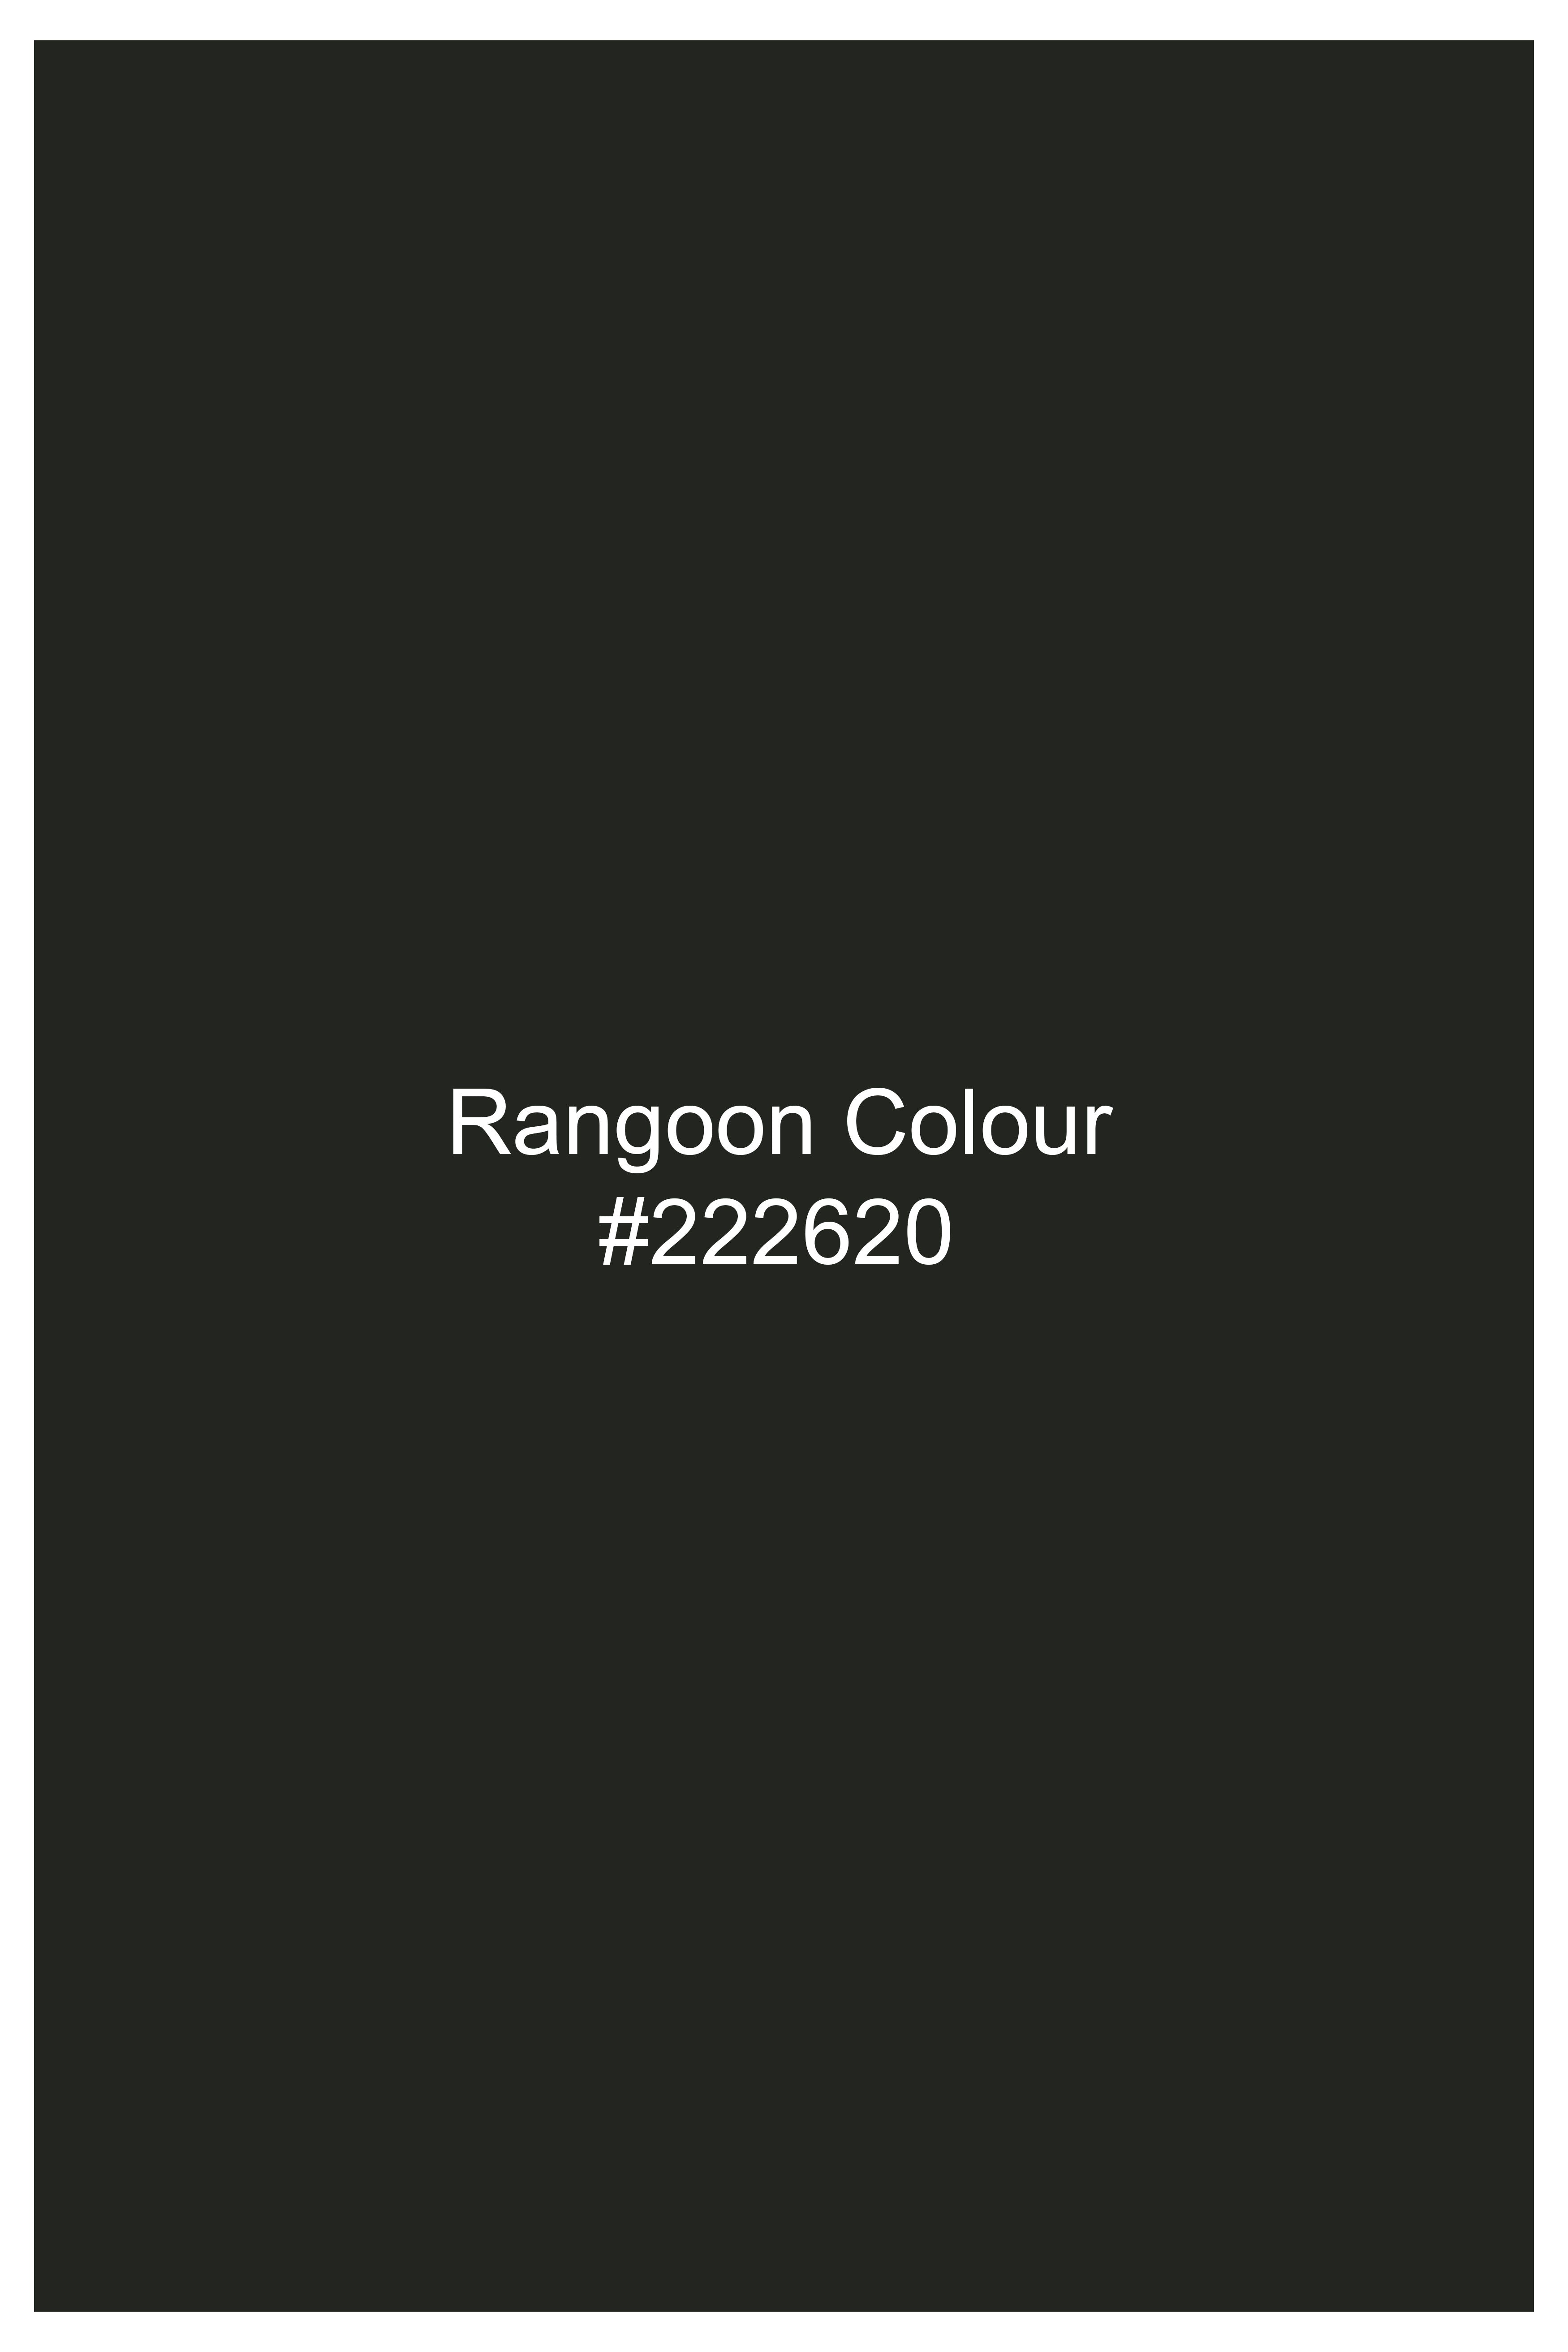 Rangoon Green Wool Rich Bandhgala Designer Suit ST2807-D1-36,ST2807-D1-38,ST2807-D1-40,ST2807-D1-42,ST2807-D1-44,ST2807-D1-46,ST2807-D1-48,ST2807-D1-50,ST2807-D1-52,ST2807-D1-54,ST2807-D1-56,ST2807-D1-58,ST2807-D1-60